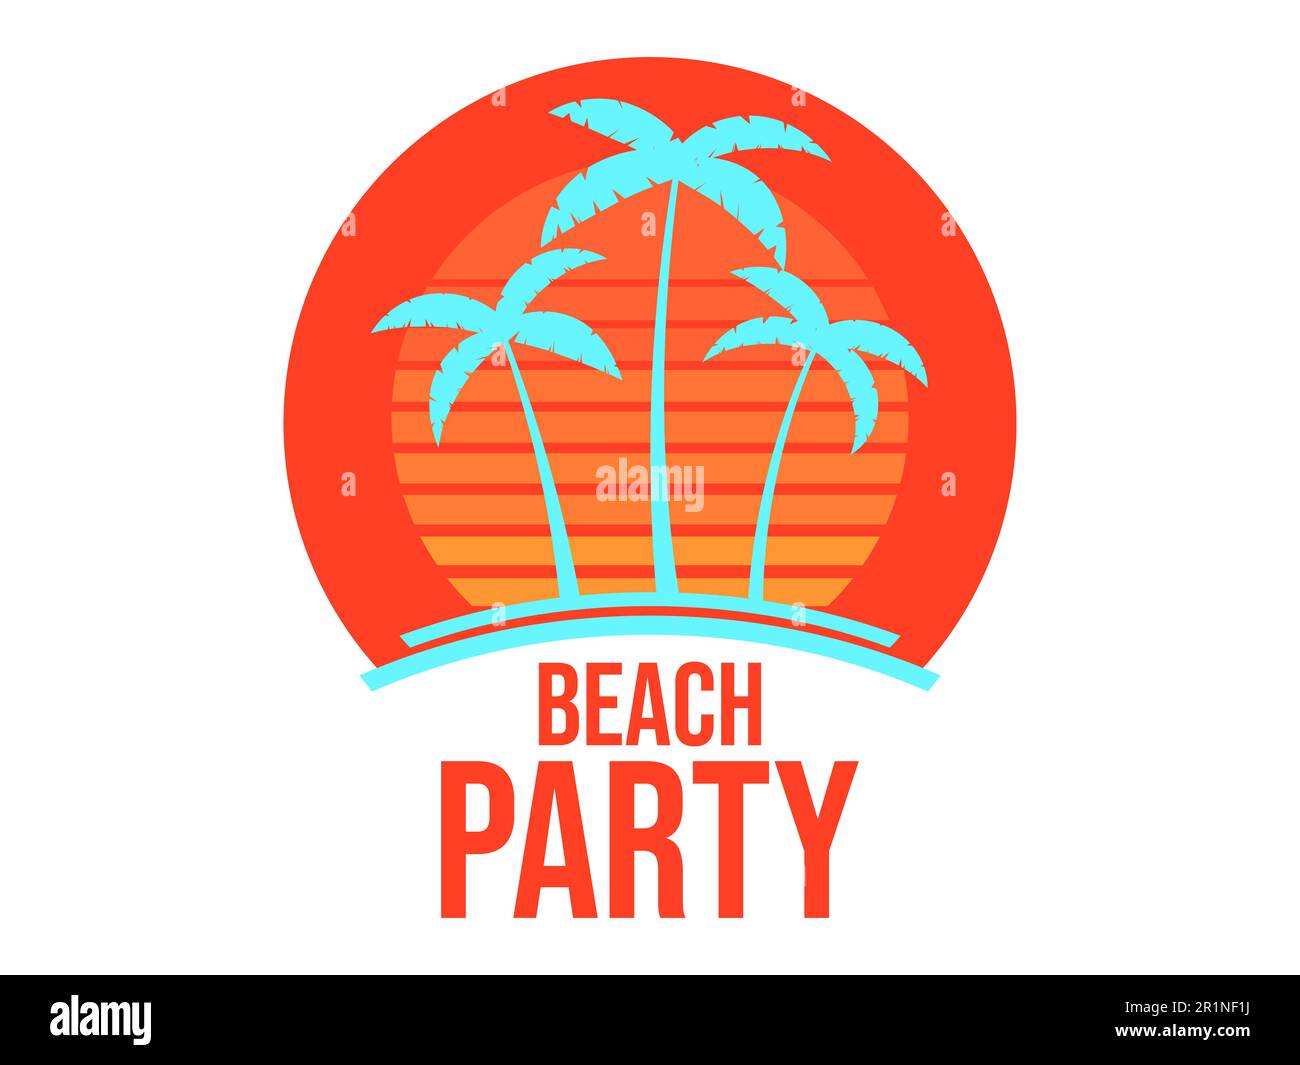 Strandparty-Banner mit Palmen und Sonnenuntergang isoliert auf weißem Hintergrund. Sommer tropischer Sonnenuntergang mit Sonnenpalmen im Stil der 90s Jahre. Design für Printi Stock Vektor